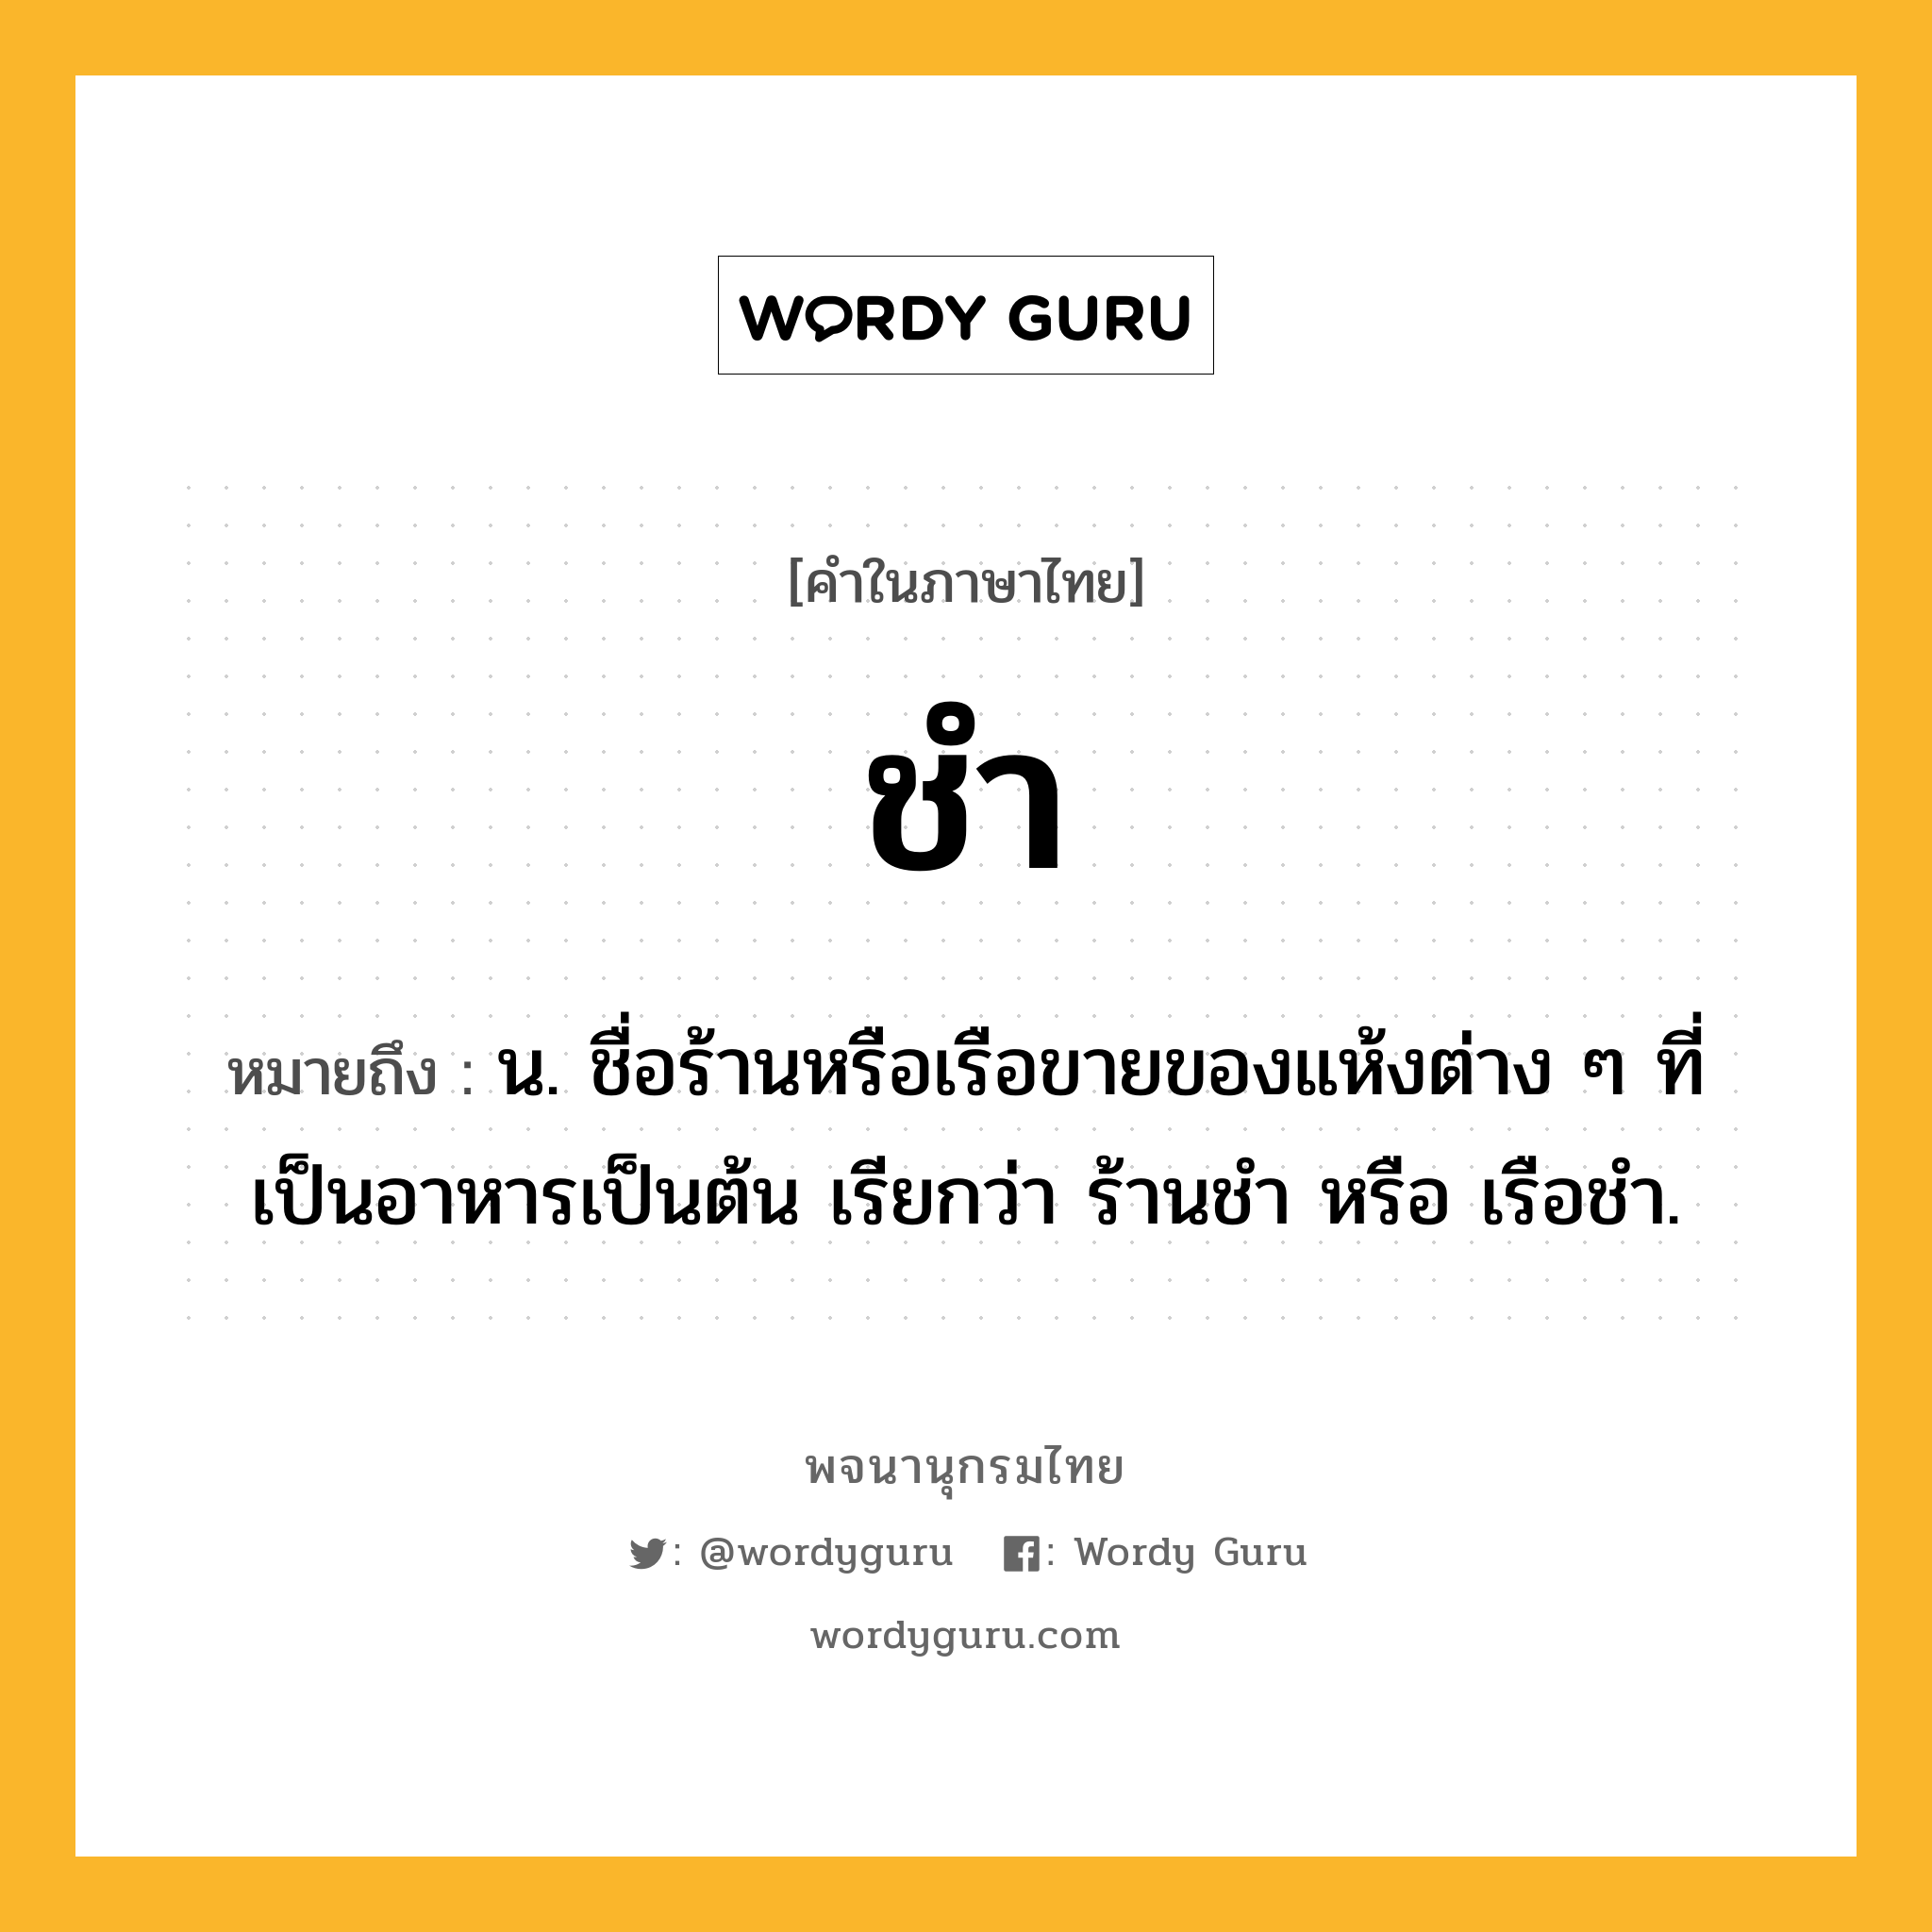 ชำ หมายถึงอะไร?, คำในภาษาไทย ชำ หมายถึง น. ชื่อร้านหรือเรือขายของแห้งต่าง ๆ ที่เป็นอาหารเป็นต้น เรียกว่า ร้านชํา หรือ เรือชํา.